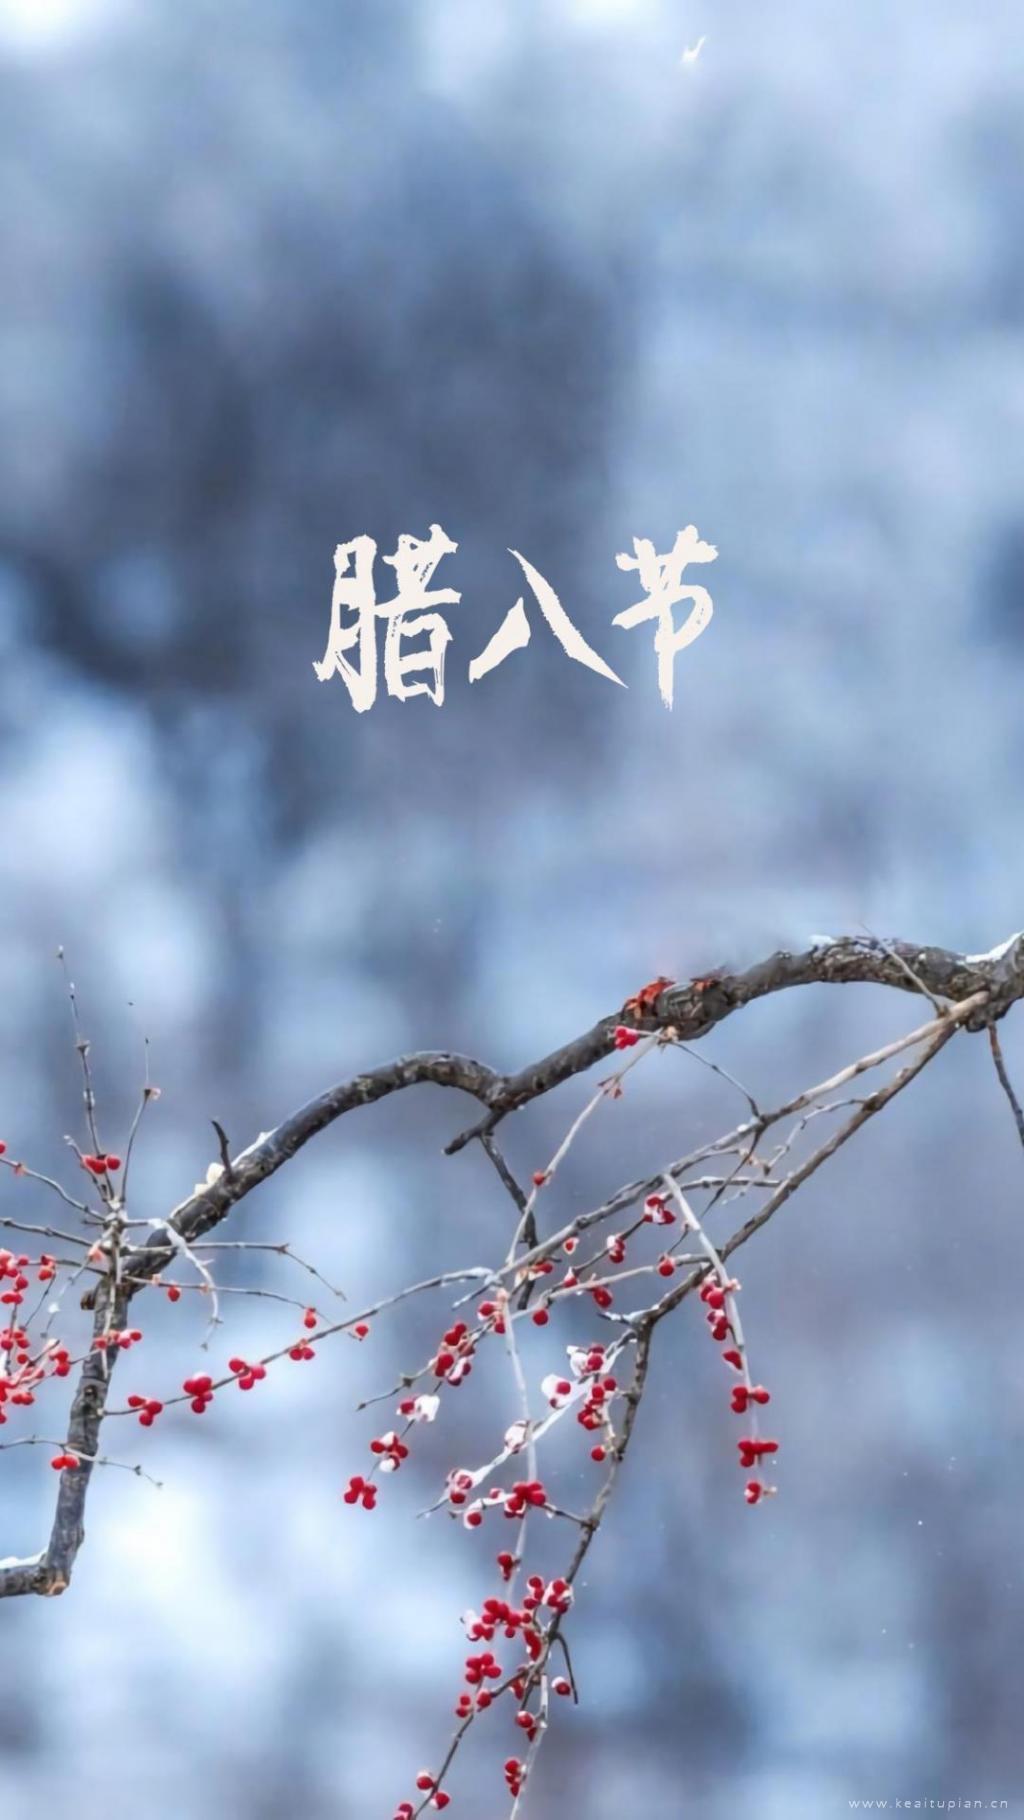 中国传统节日腊八节高清壁纸图片